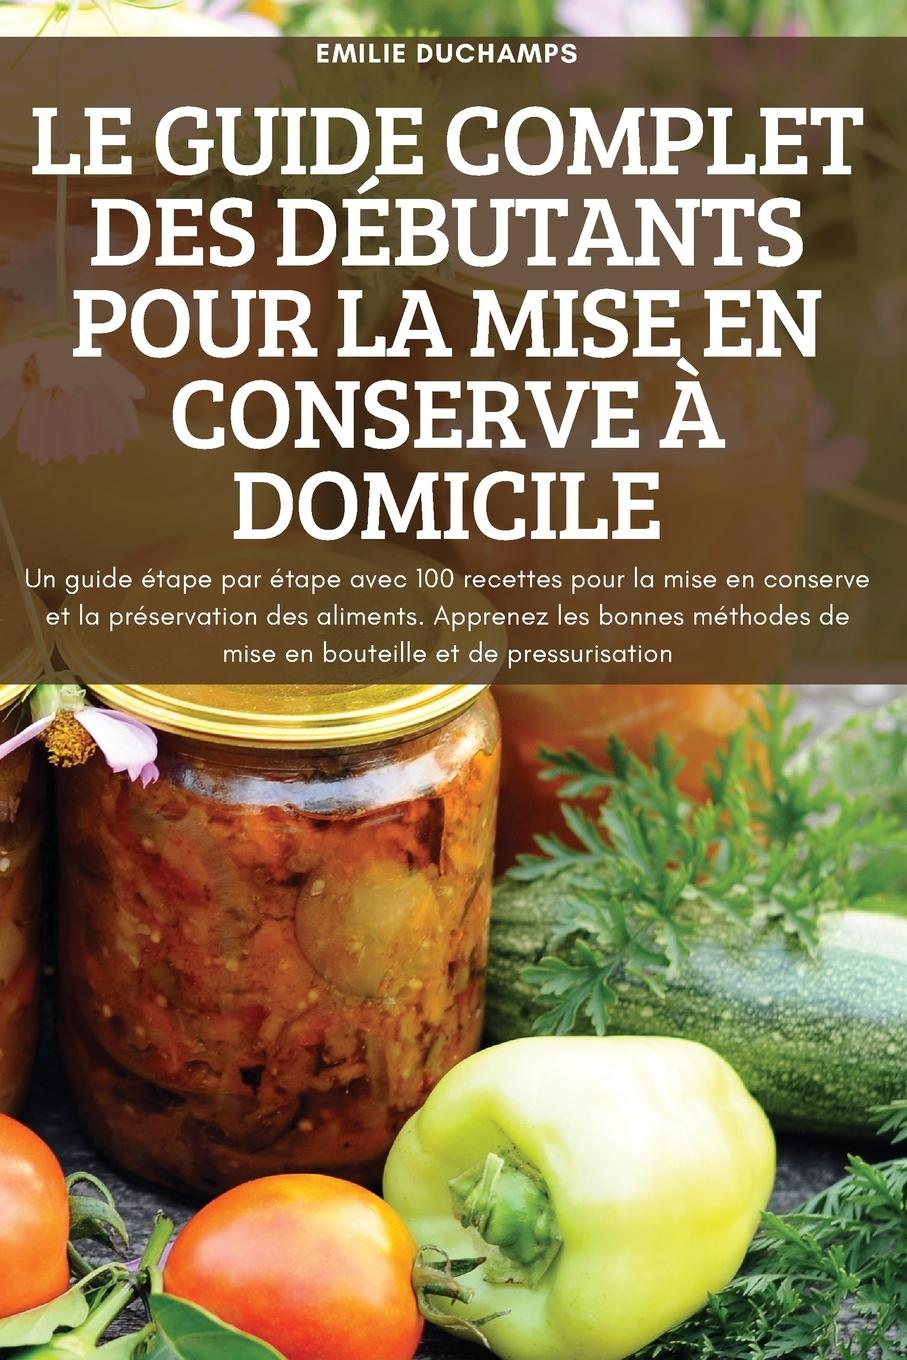 Könyv Guide Complet Des Debutants Pour La Mise En Conserve A Domicile 